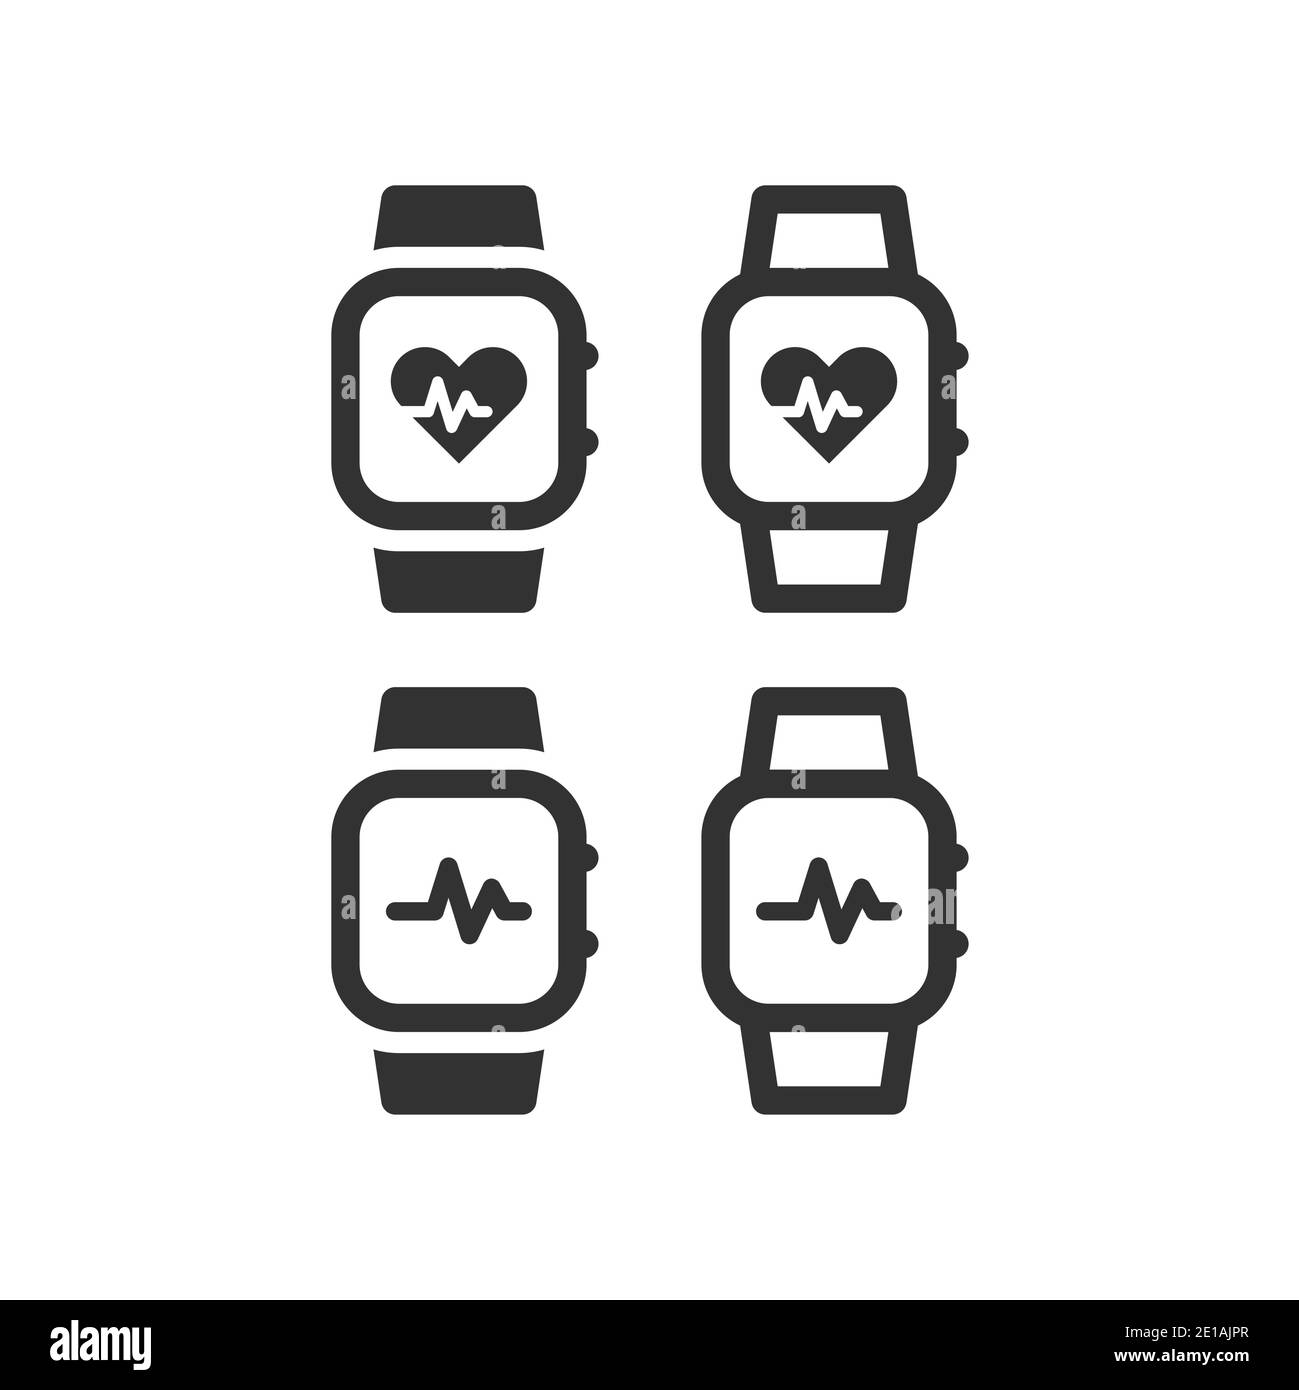 Orologio a impulsi o pulsometro con icona a battito cardiaco. Orologio da polso con display di misurazione della frequenza cardiaca simbolo vettoriale nero. Illustrazione Vettoriale